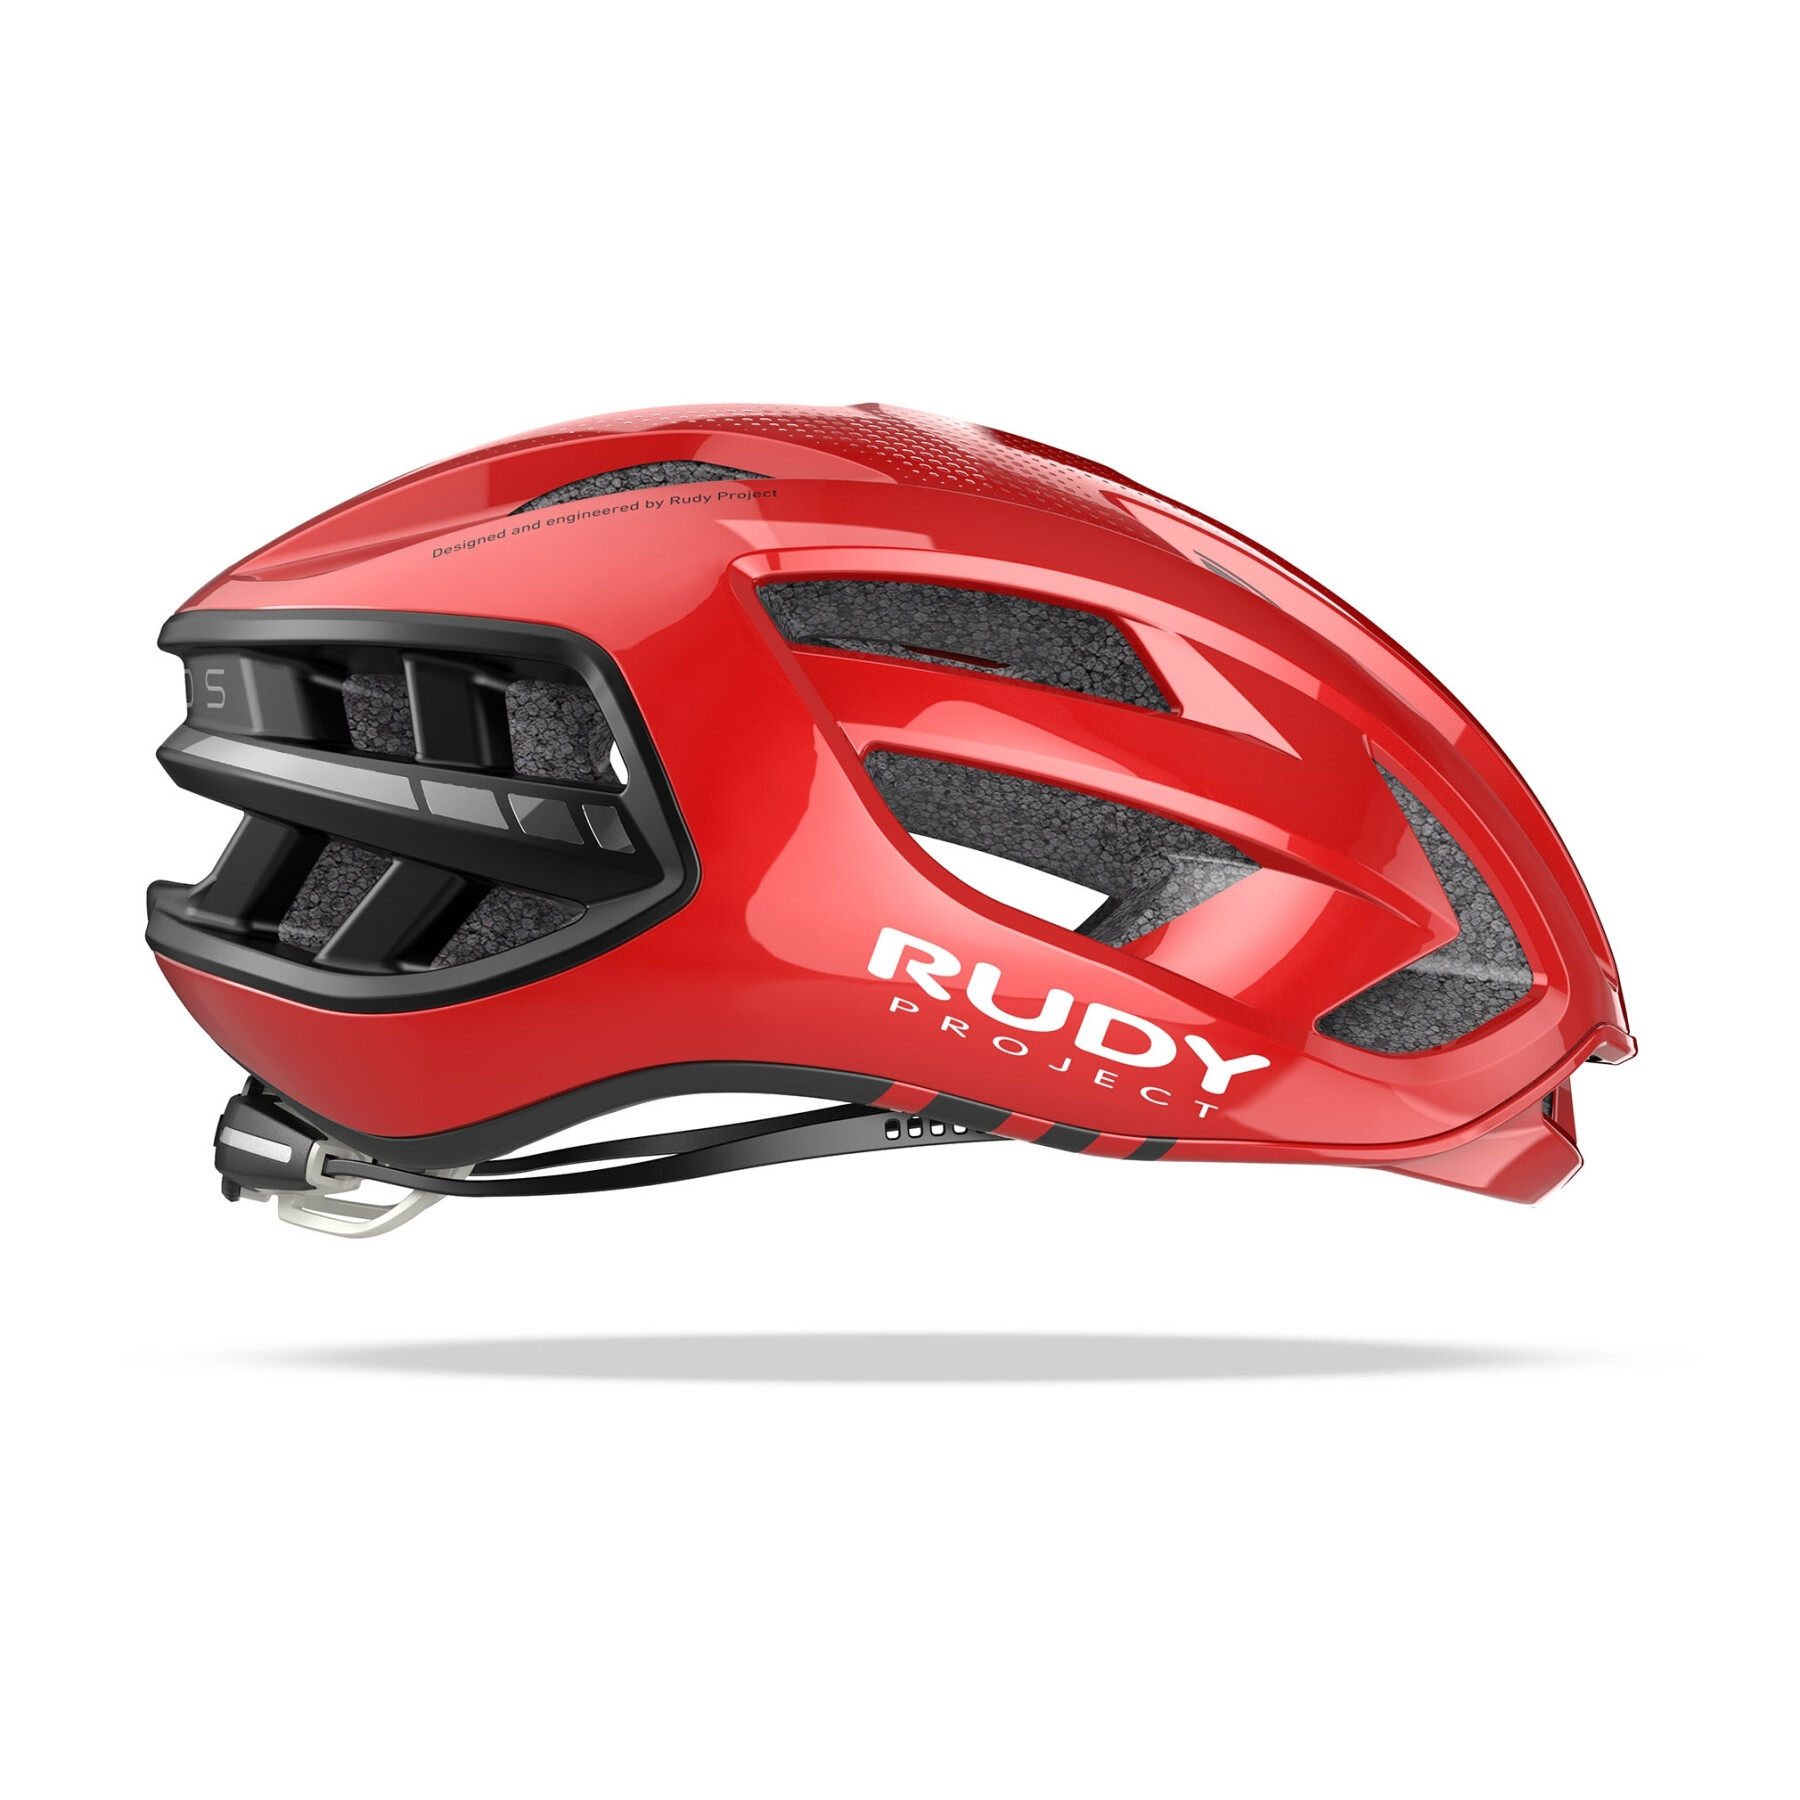 Road helmet Rudy Project Egos